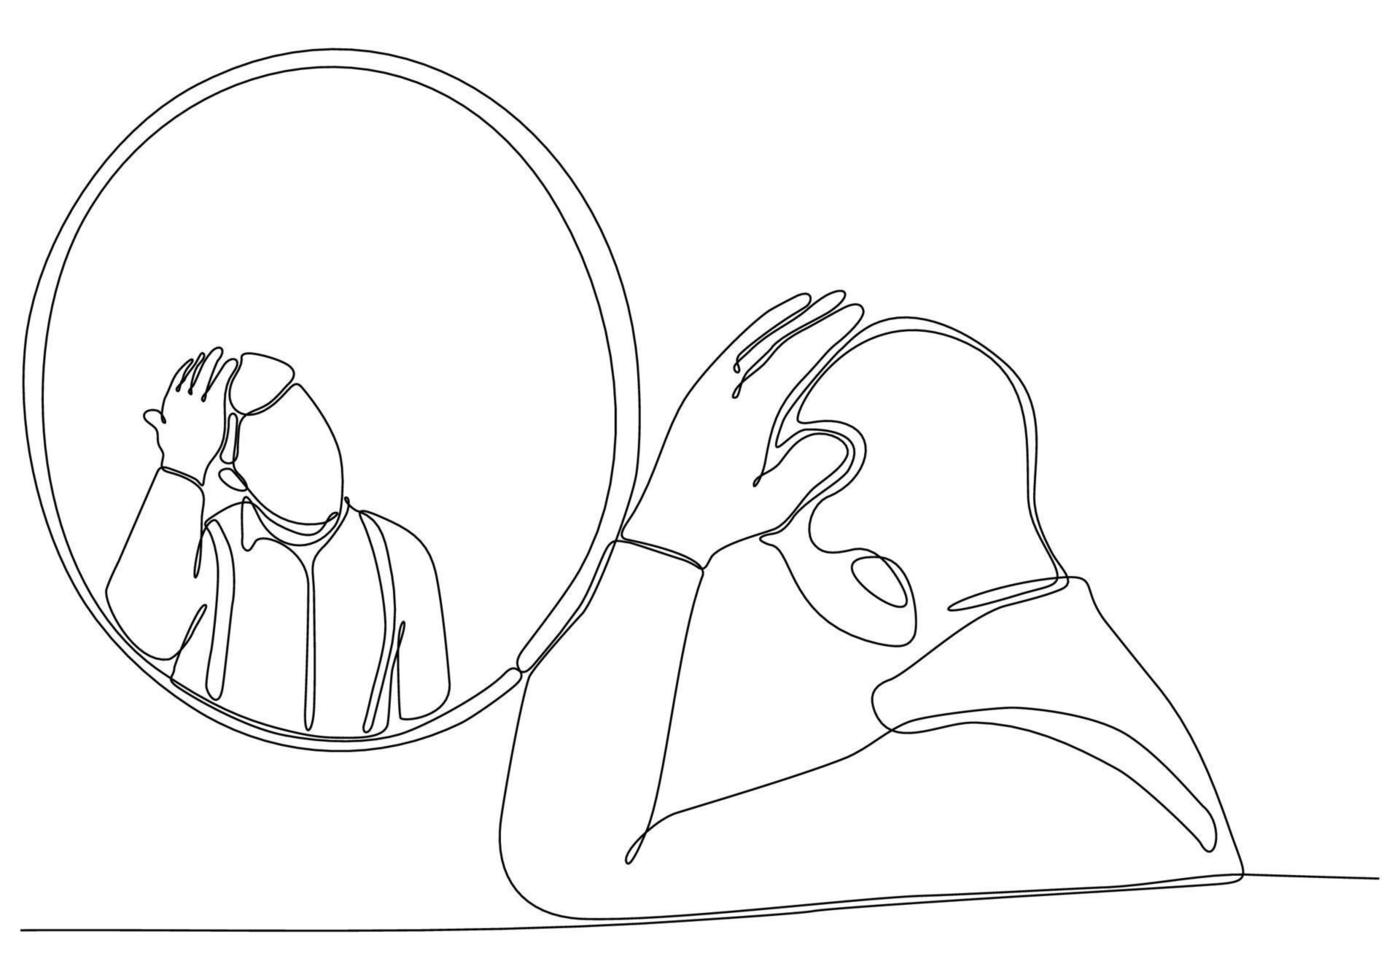 kontinuerlig linjeteckning av mannen i spegelvektorillustration vektor